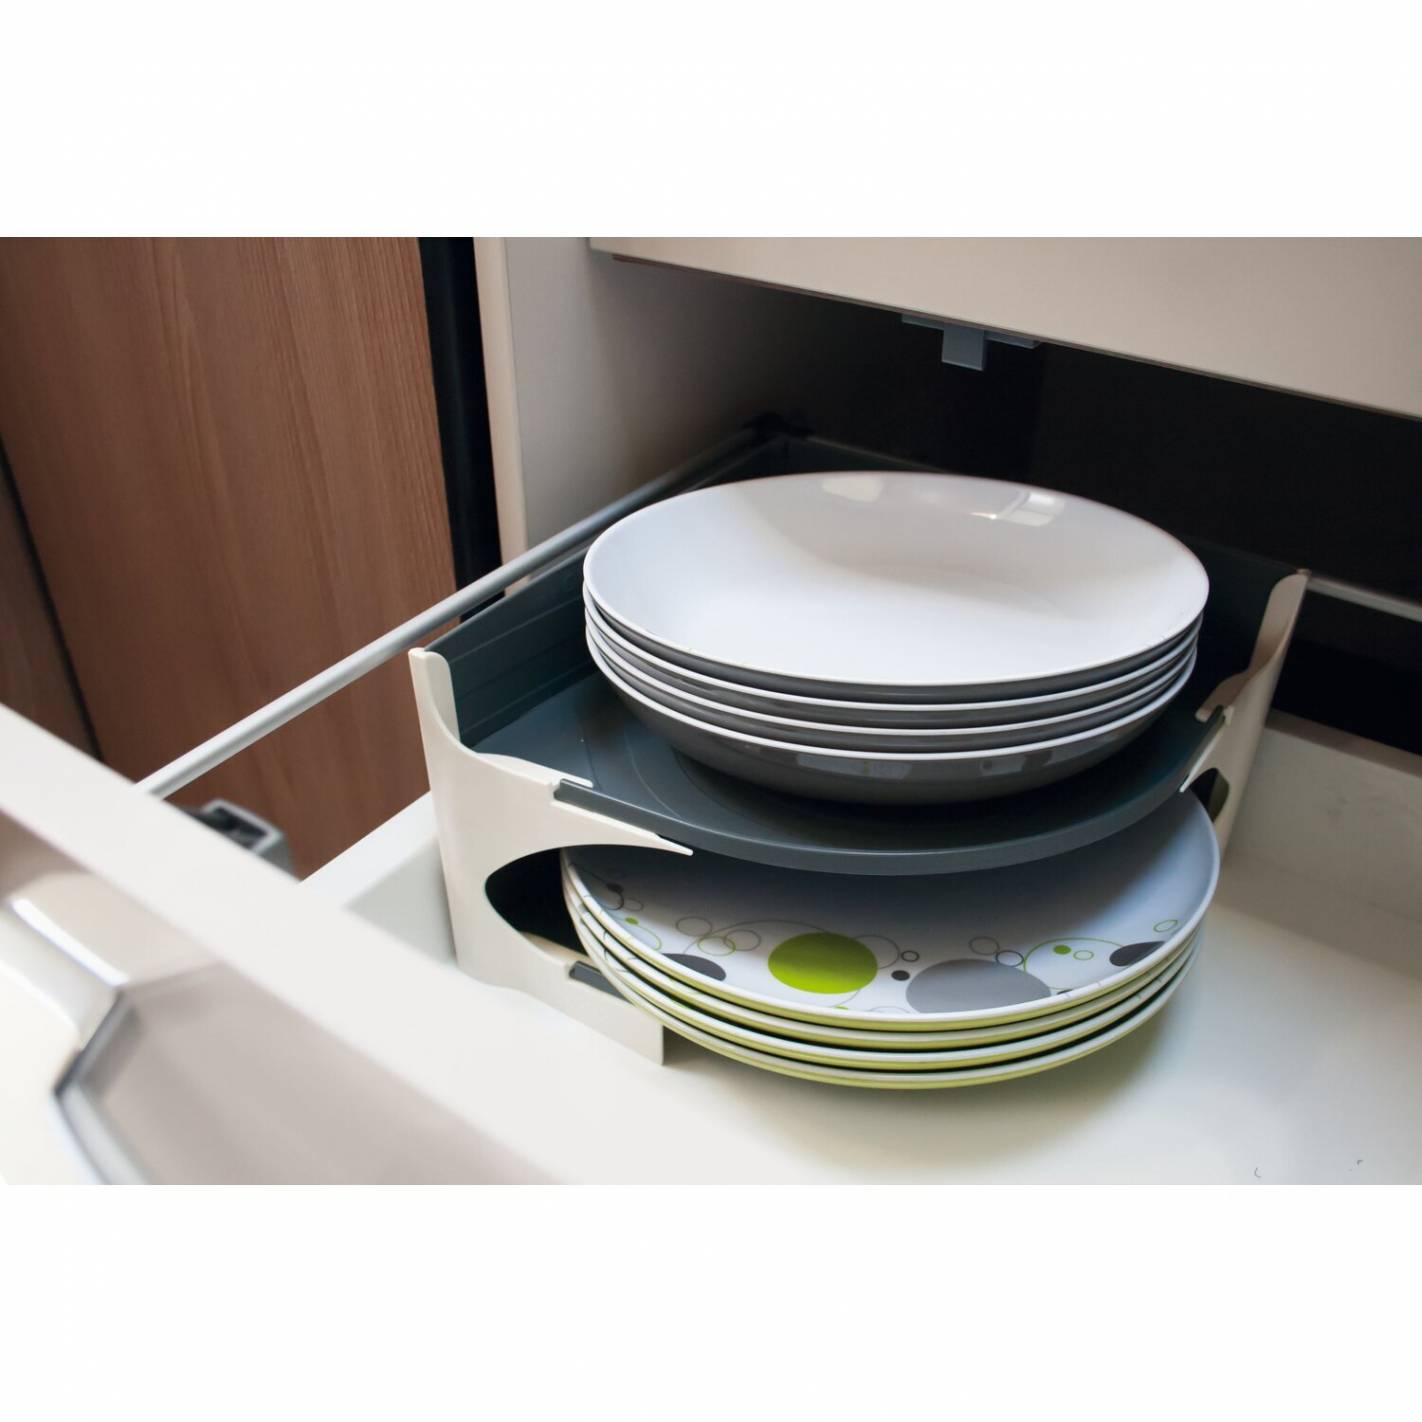 Support de rangement pour vaisselle - Just4Camper RG-911417